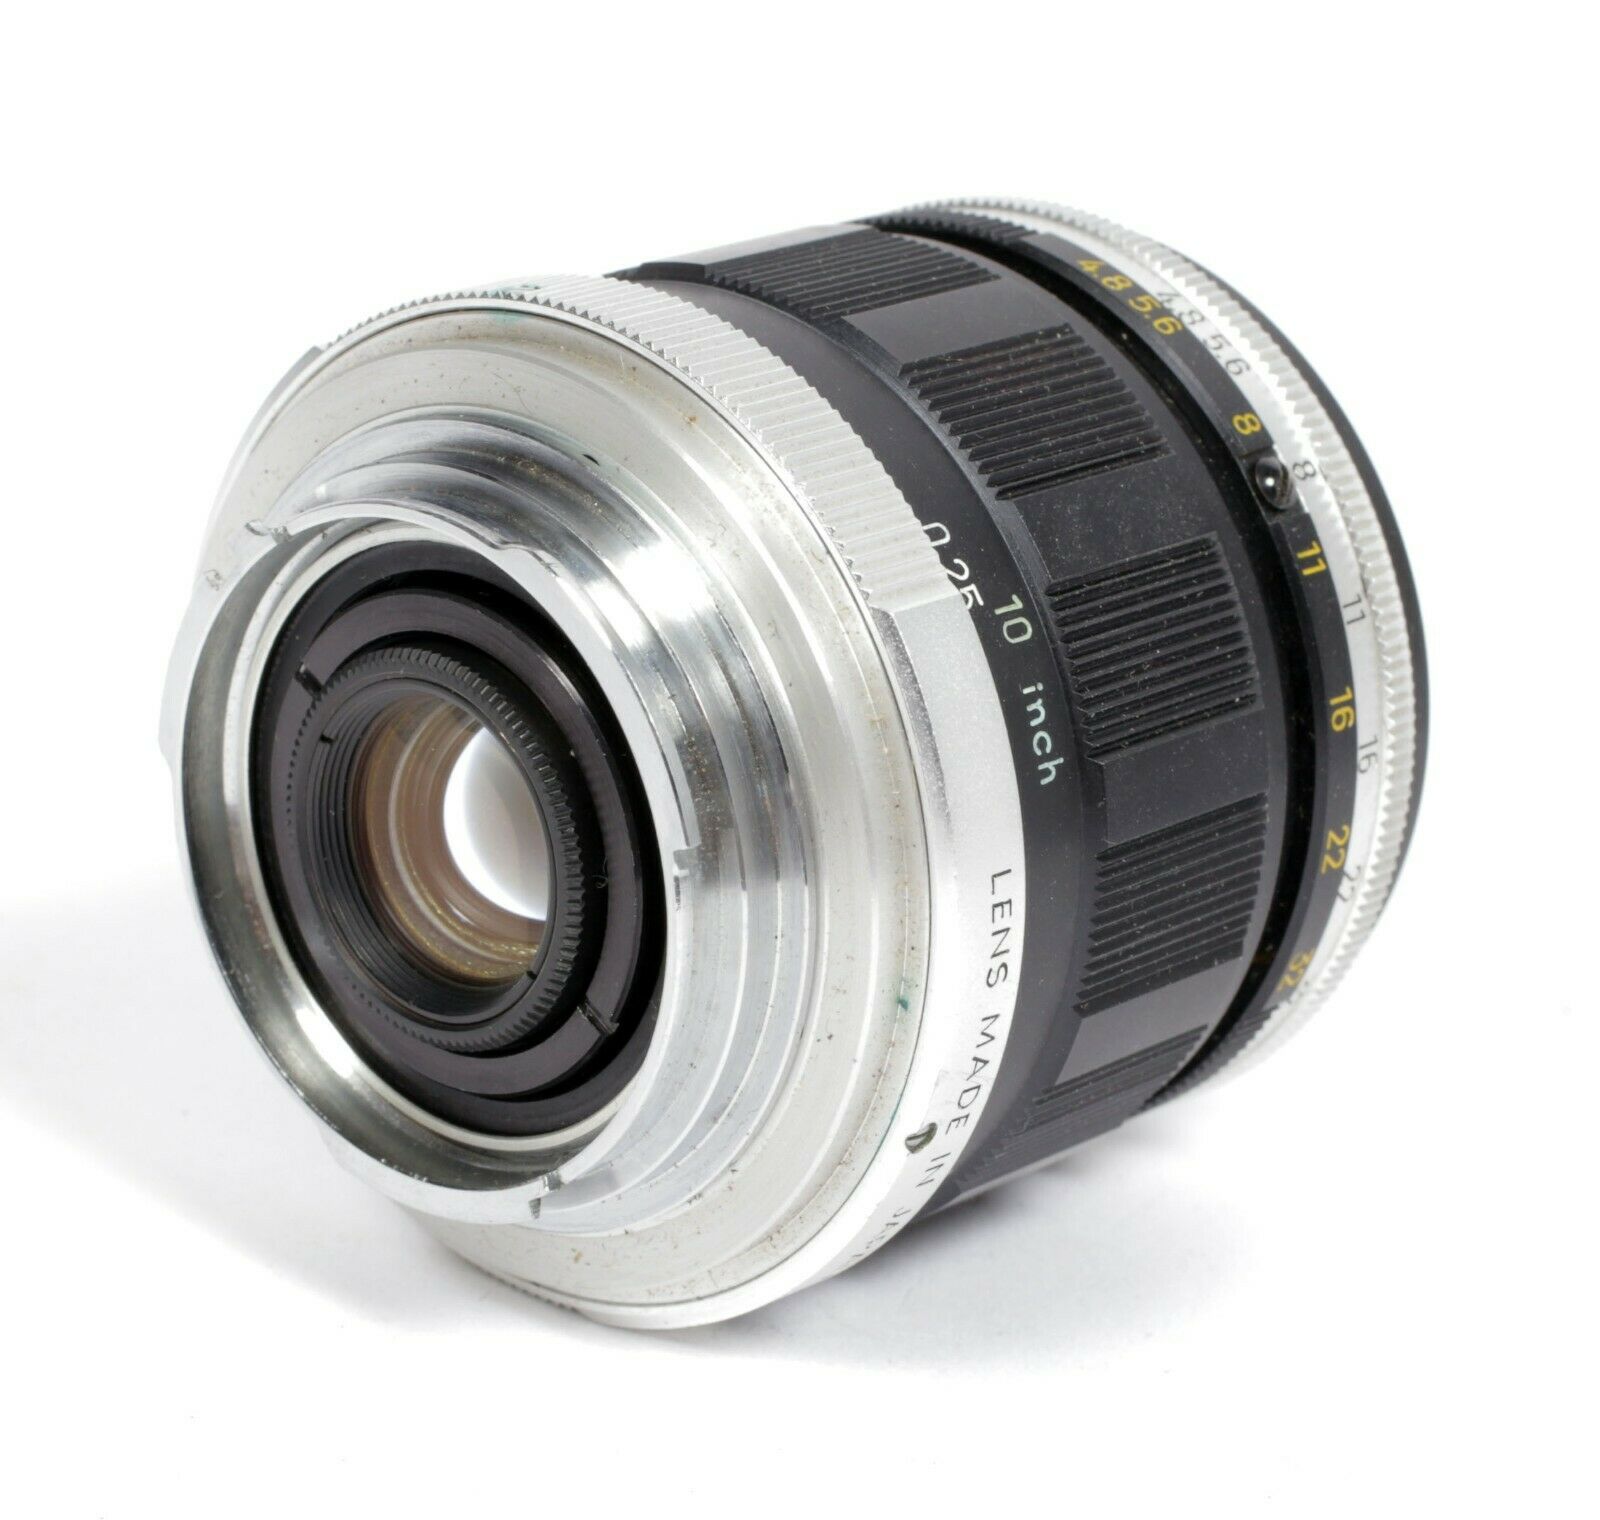 Minolta Macro Rokkor QF 50mm F3.5 MD lens | CatLABS